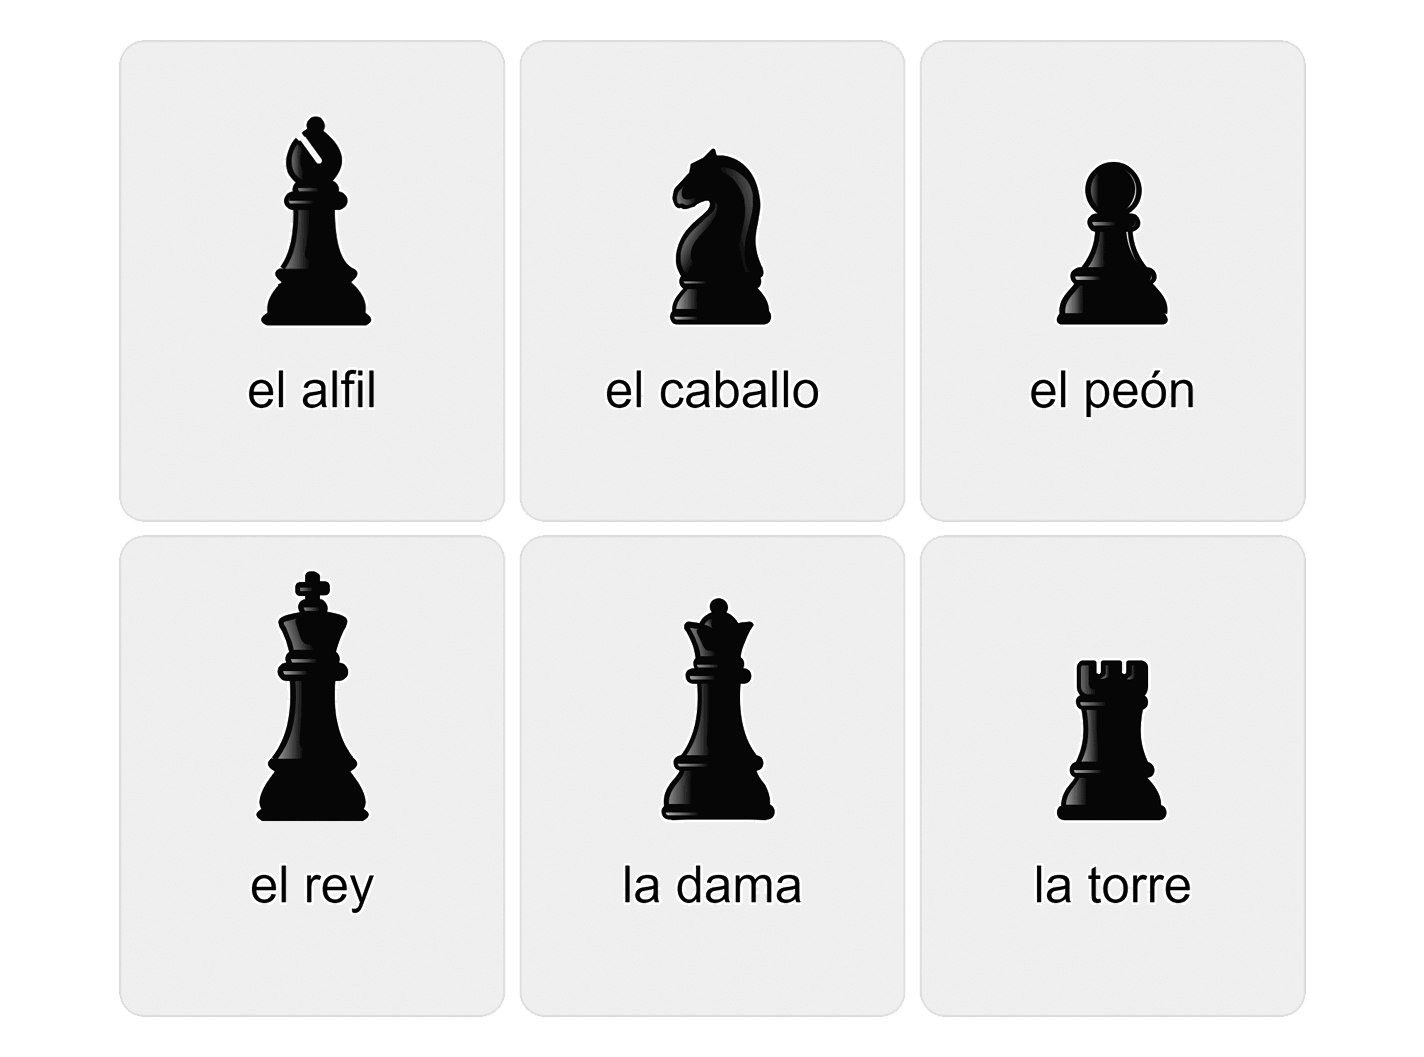 Шахматные фигуры на испанском языке